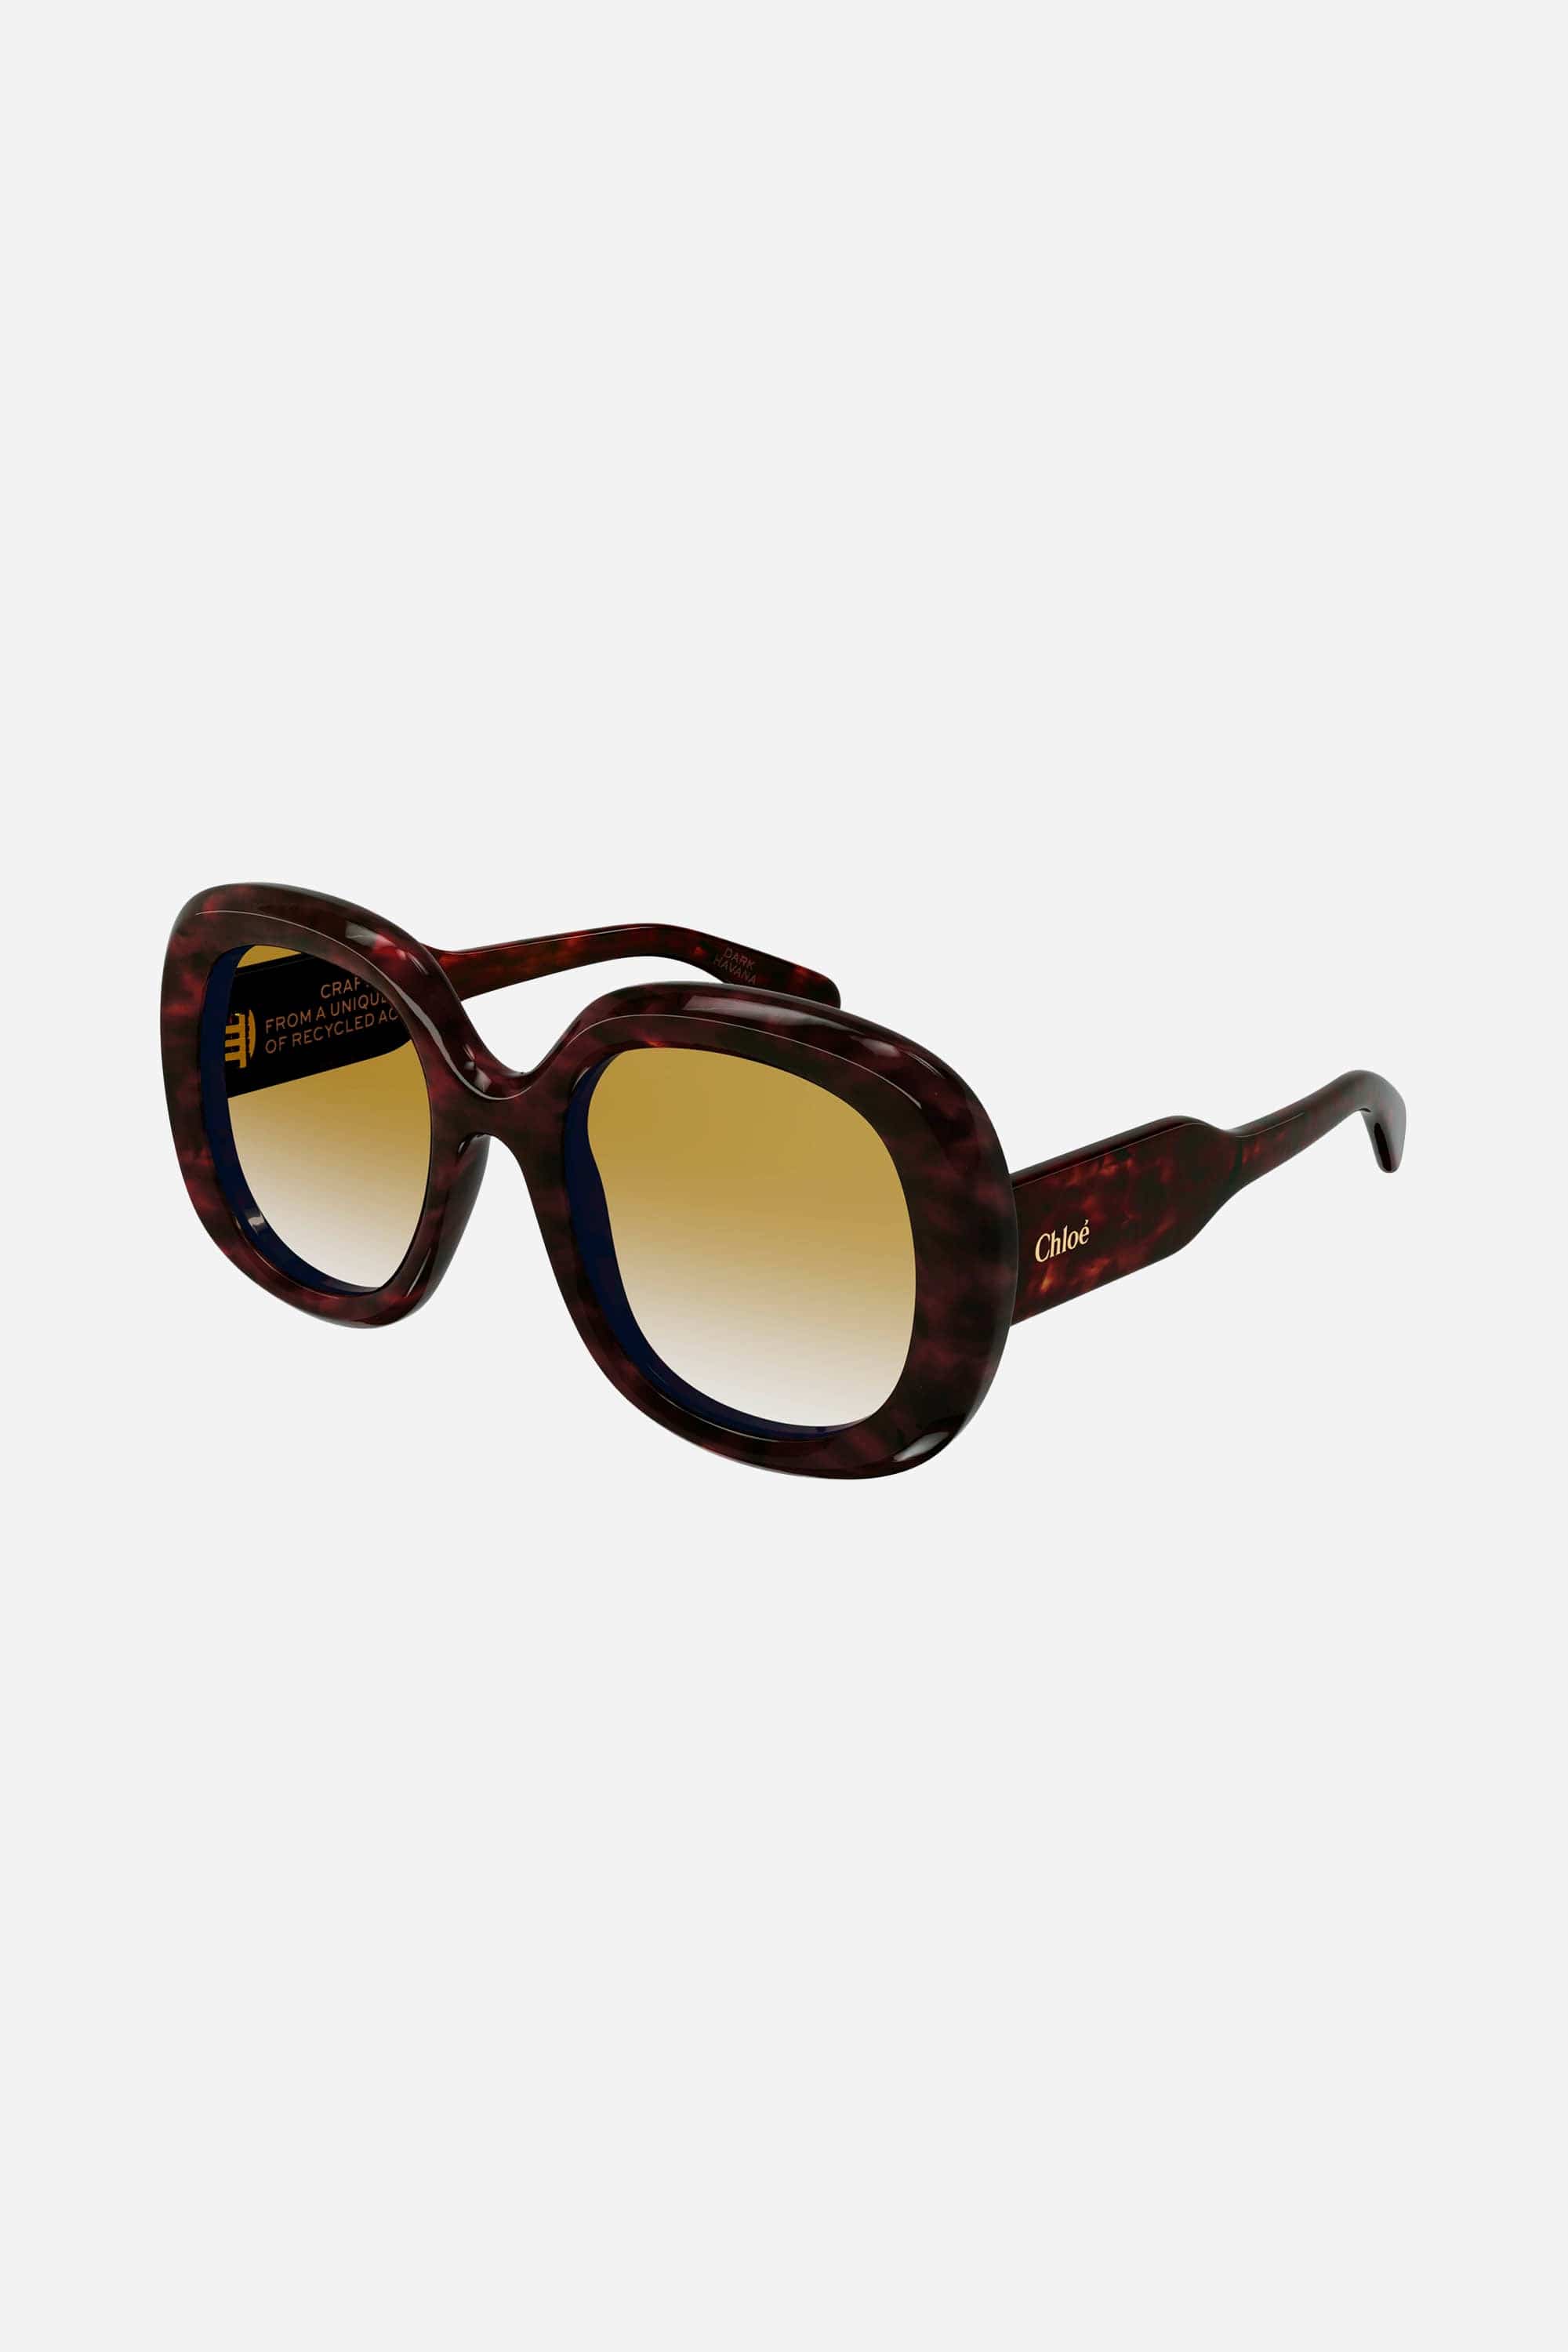 Chloe CH0153s round brown sunglasses - Eyewear Club